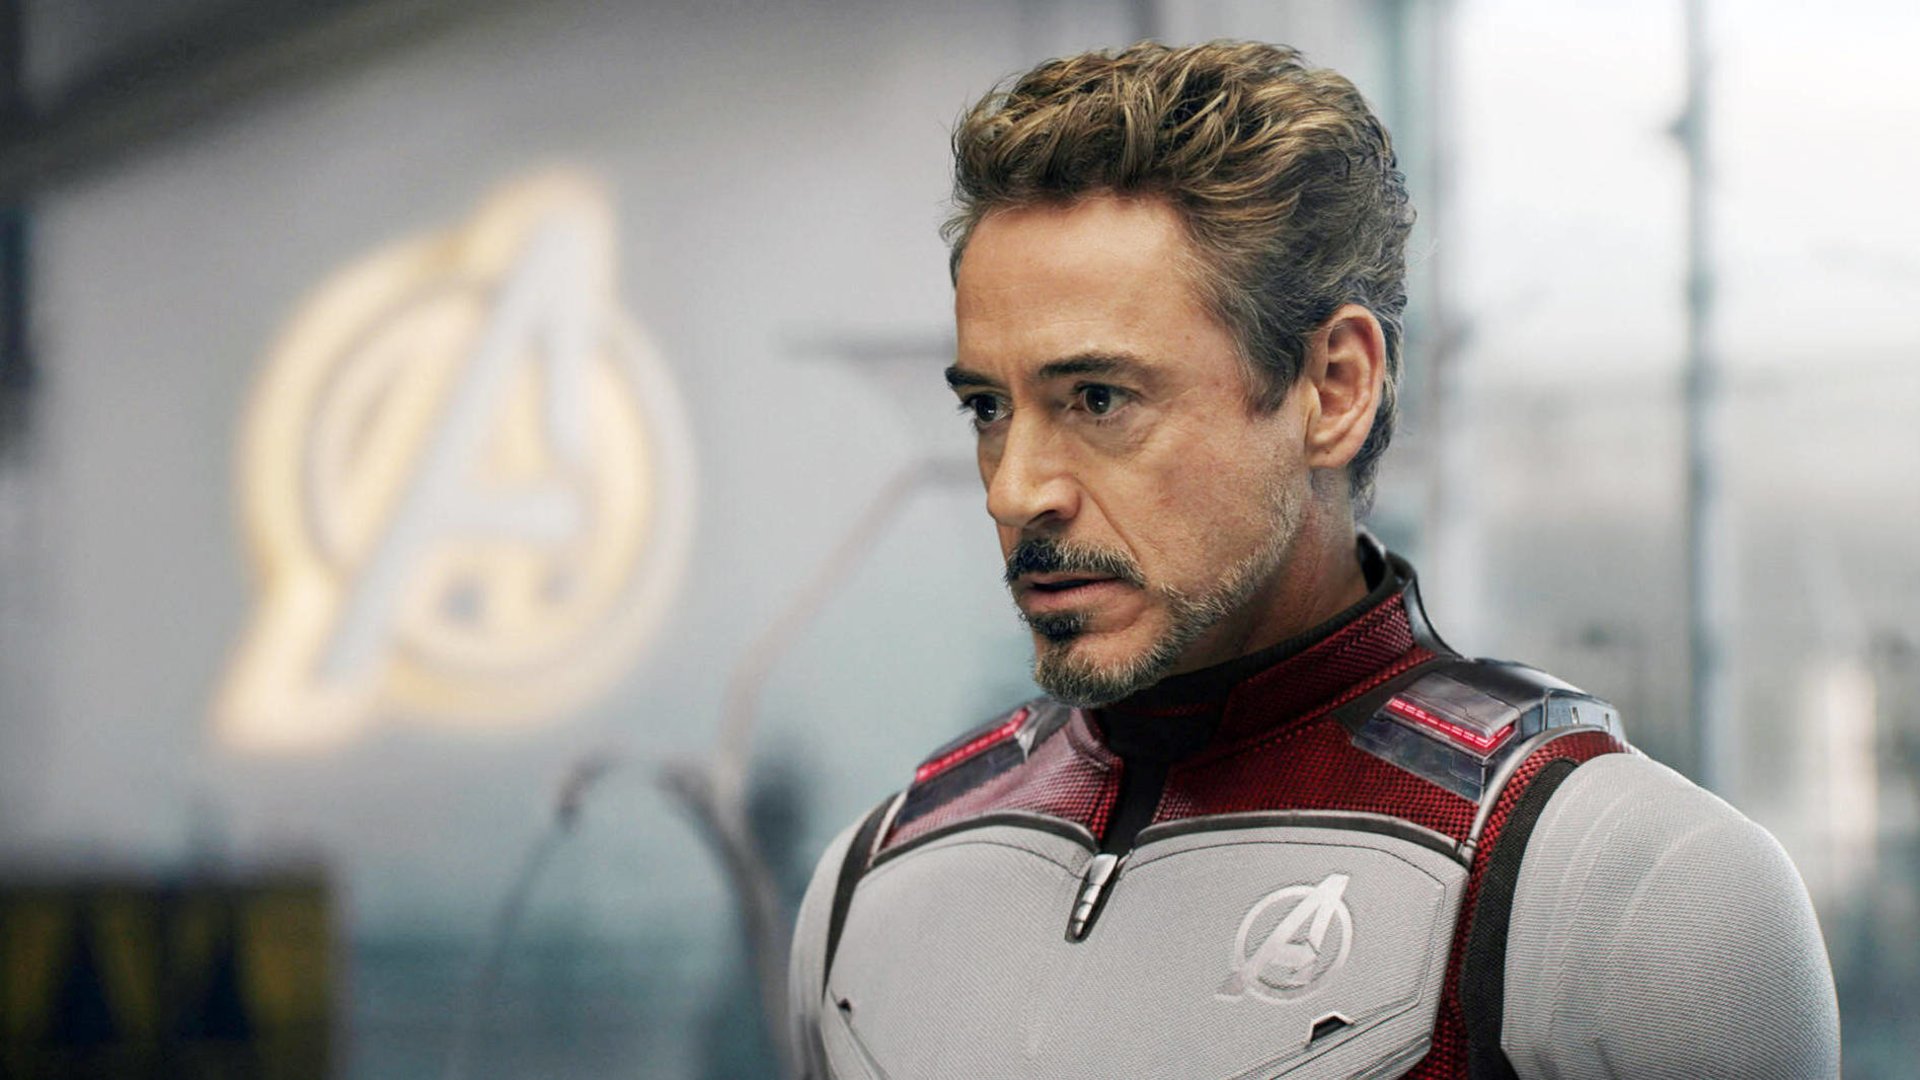 #„Avengers: Endgame“: Robert Downey Jr. hatte eigentlich ganz andere Ideen für seinen MCU-Abschied